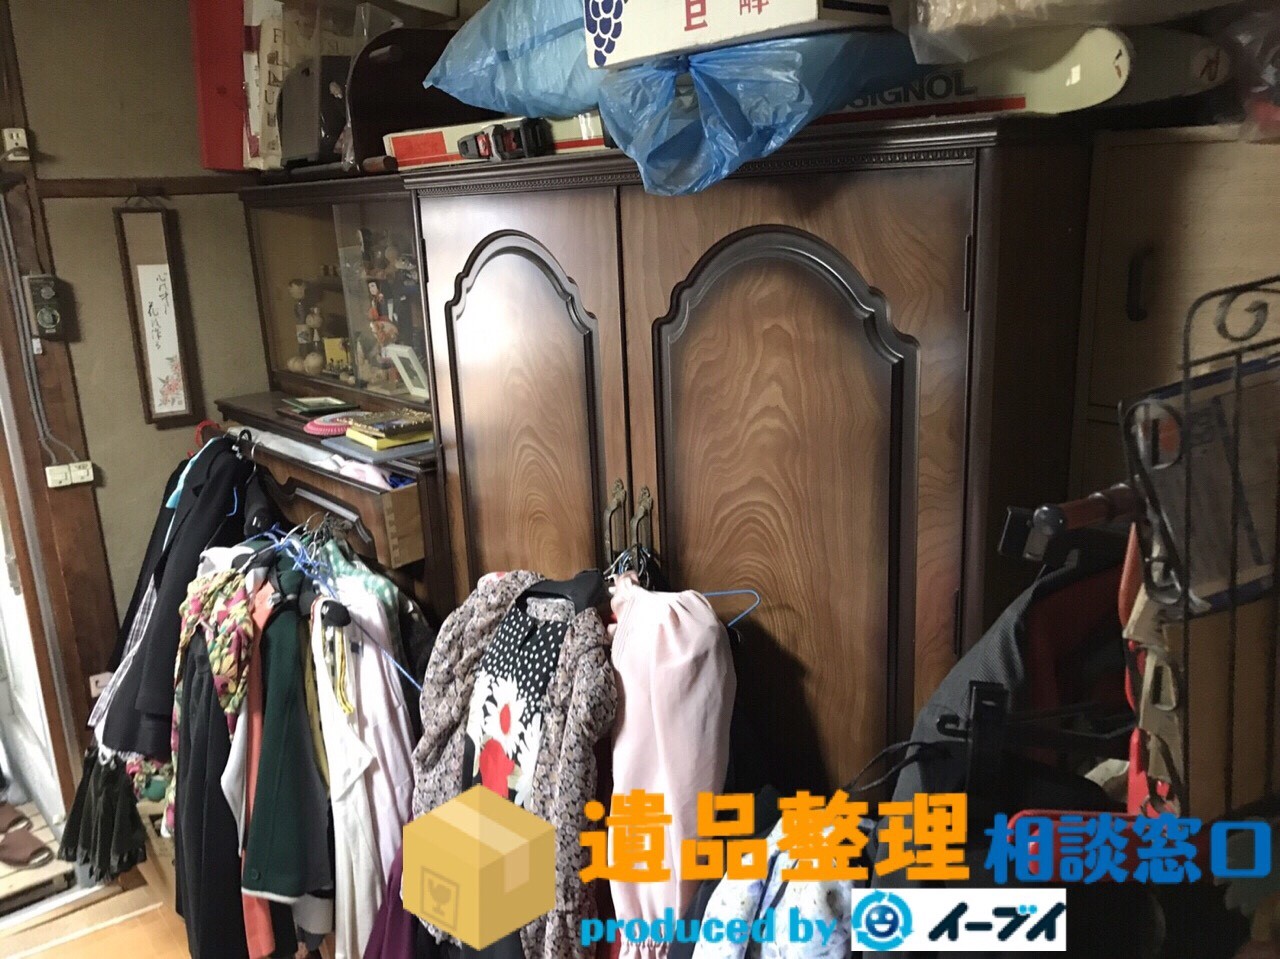 和歌山県和歌山市で遺品整理に伴う家具処分や衣類処分をしました。のアイキャッチ